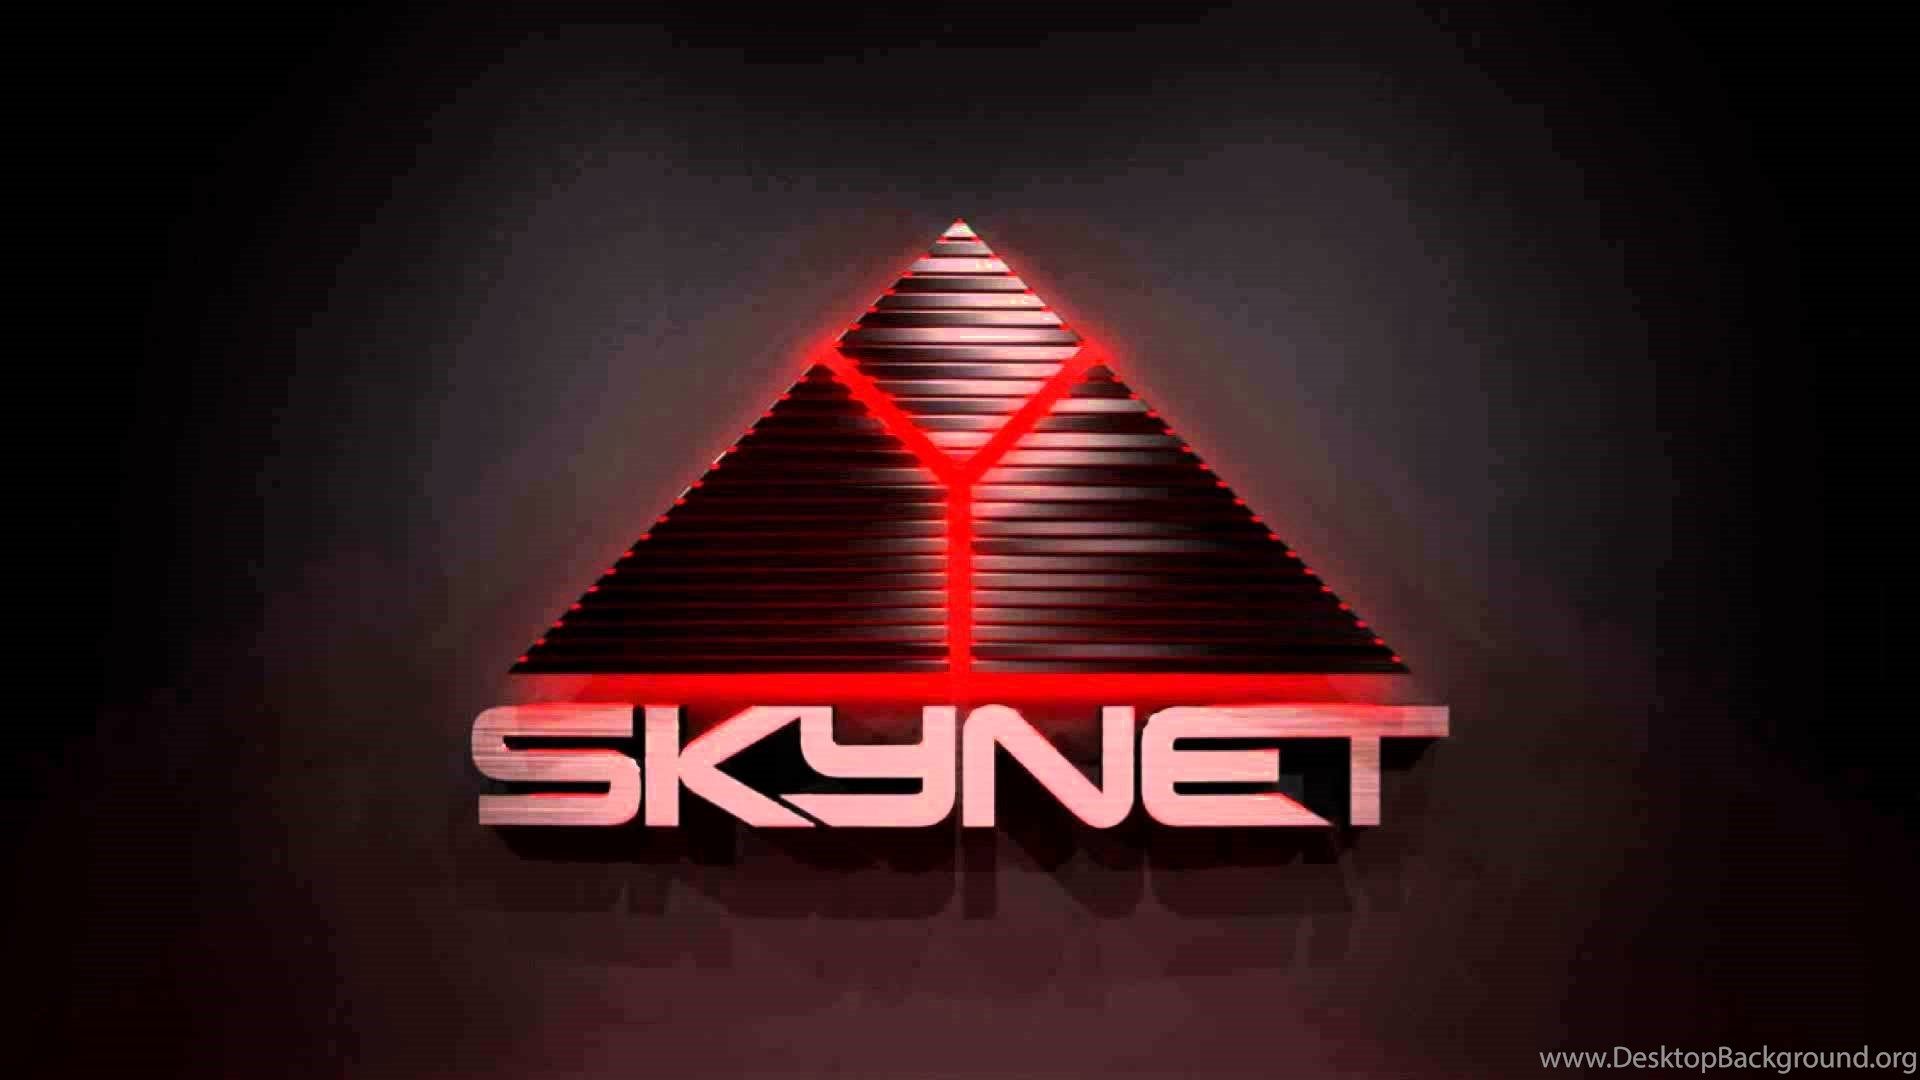 Rodney Spence Skynet YouTube Desktop Background